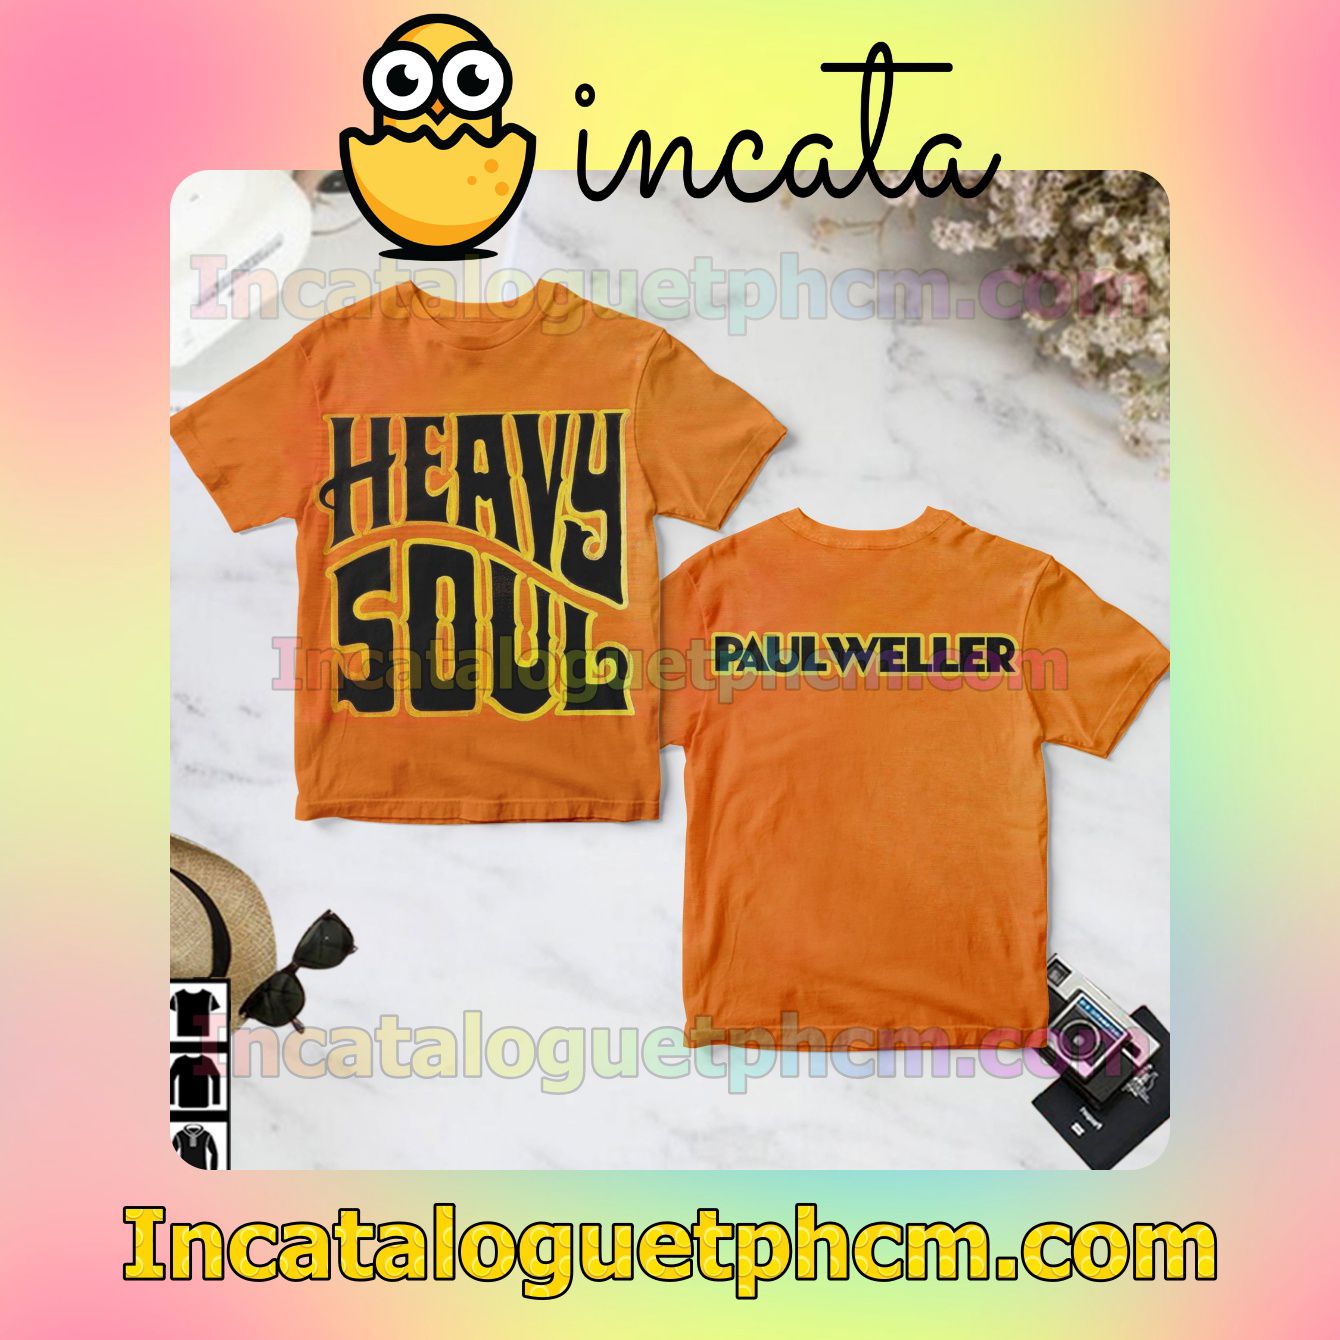 Paul Weller Heavy Soul Album Cover Fan Shirts